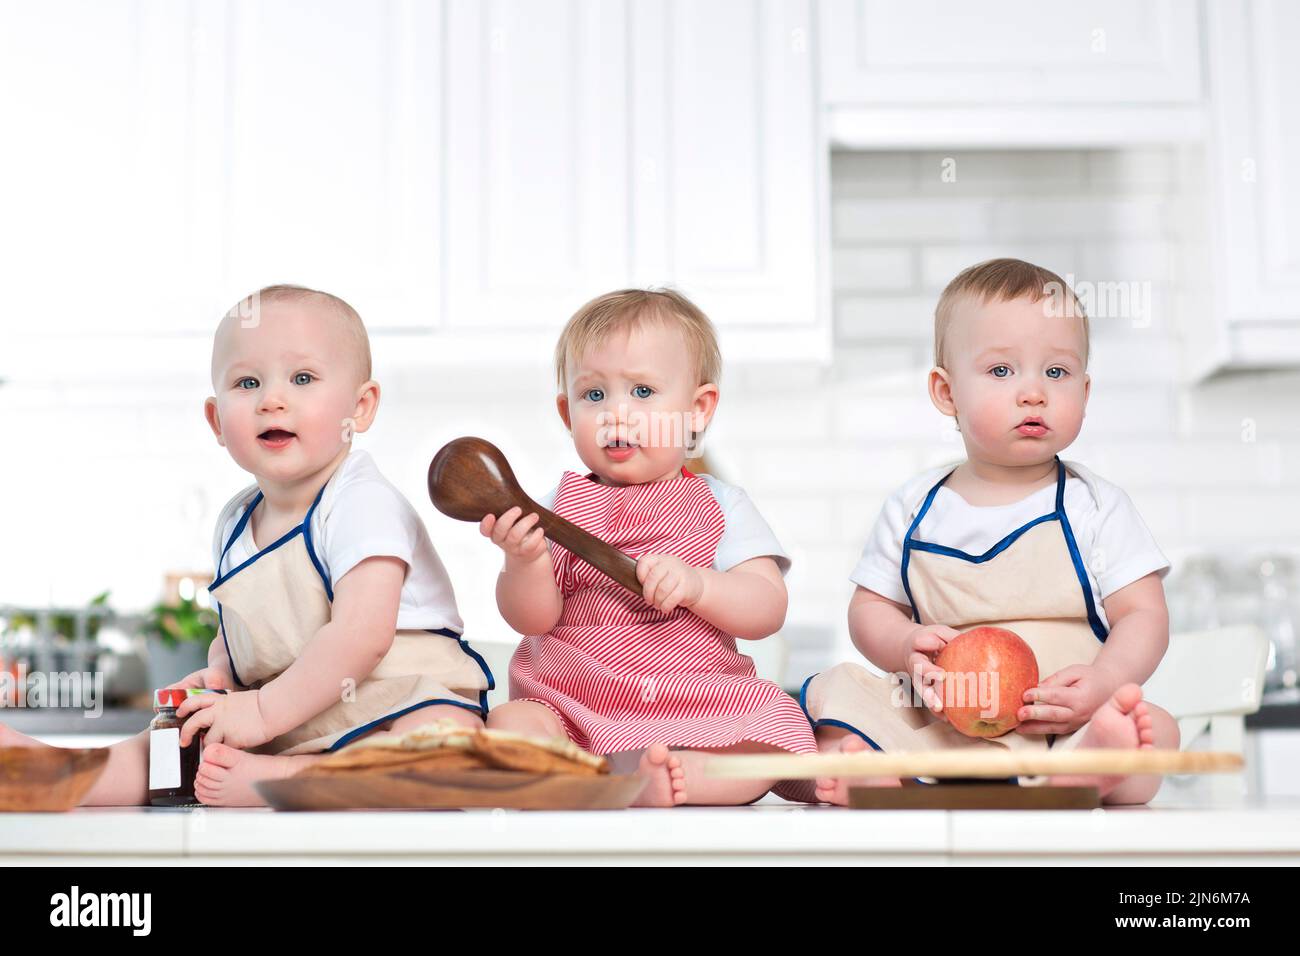 trois tout-petits sur la table de cuisine, maquette de nourriture pour bébé Banque D'Images